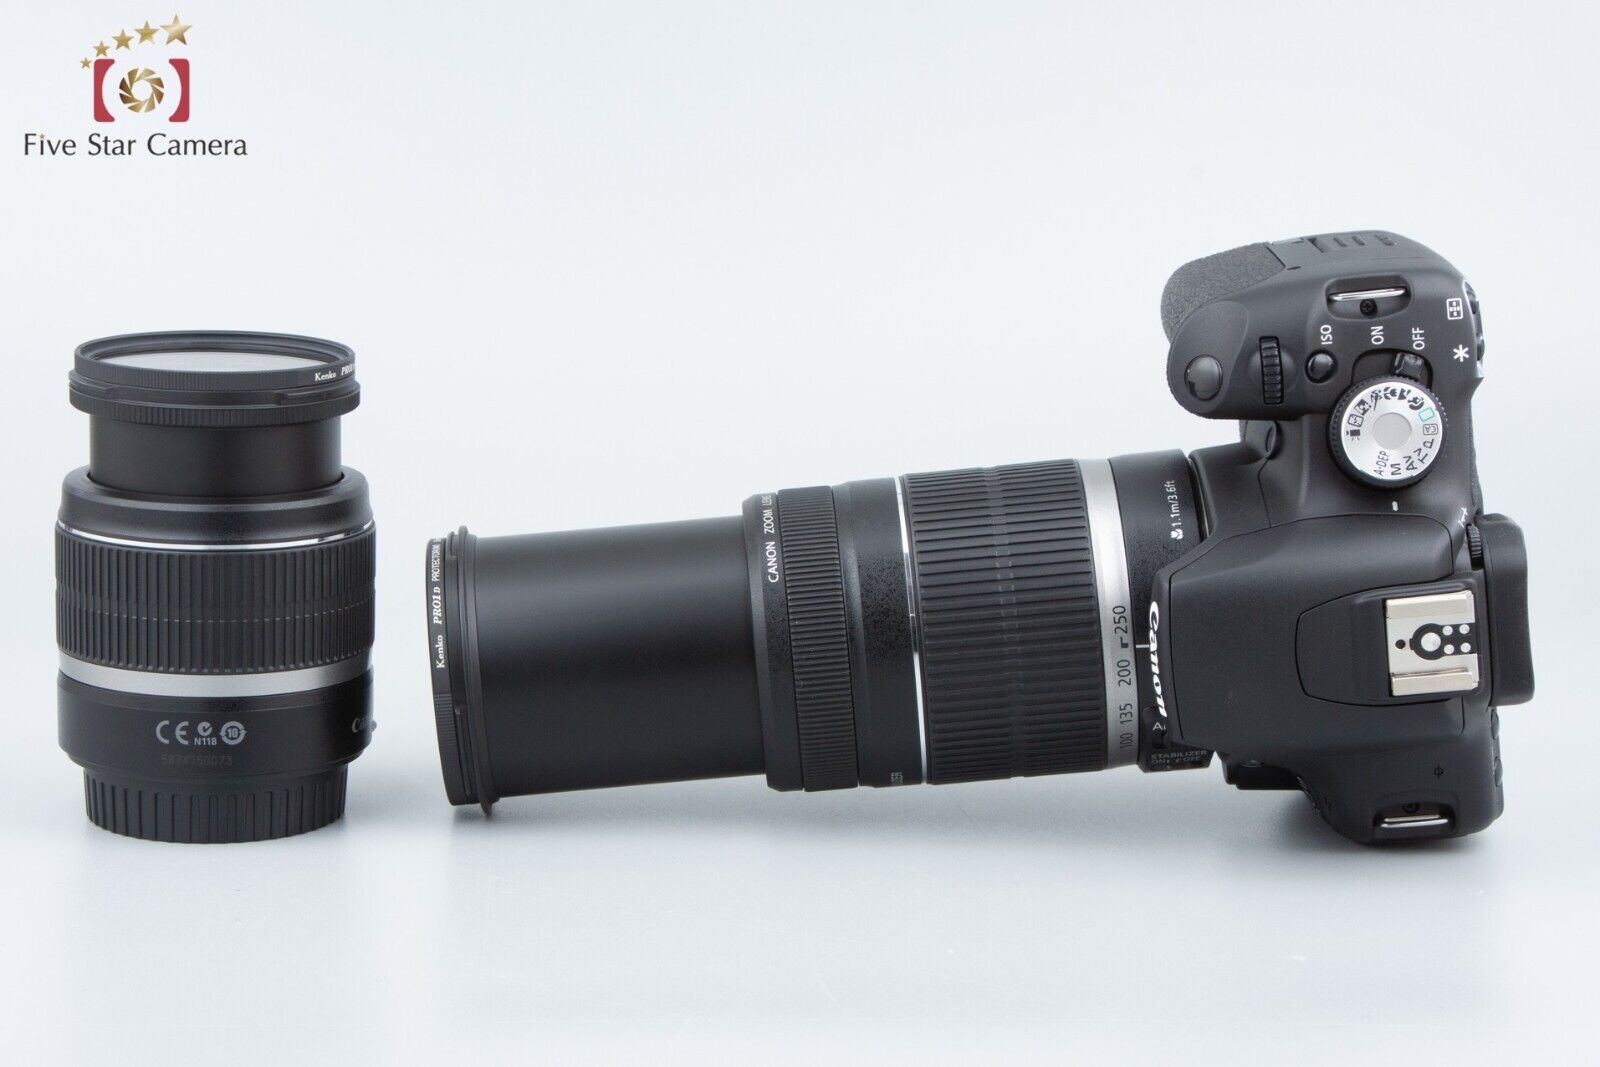 "Count 874" Canon EOS Kiss X3 / Rebel T1i / 500D 15.1MP EF-S 18-55 55-250 Lenses